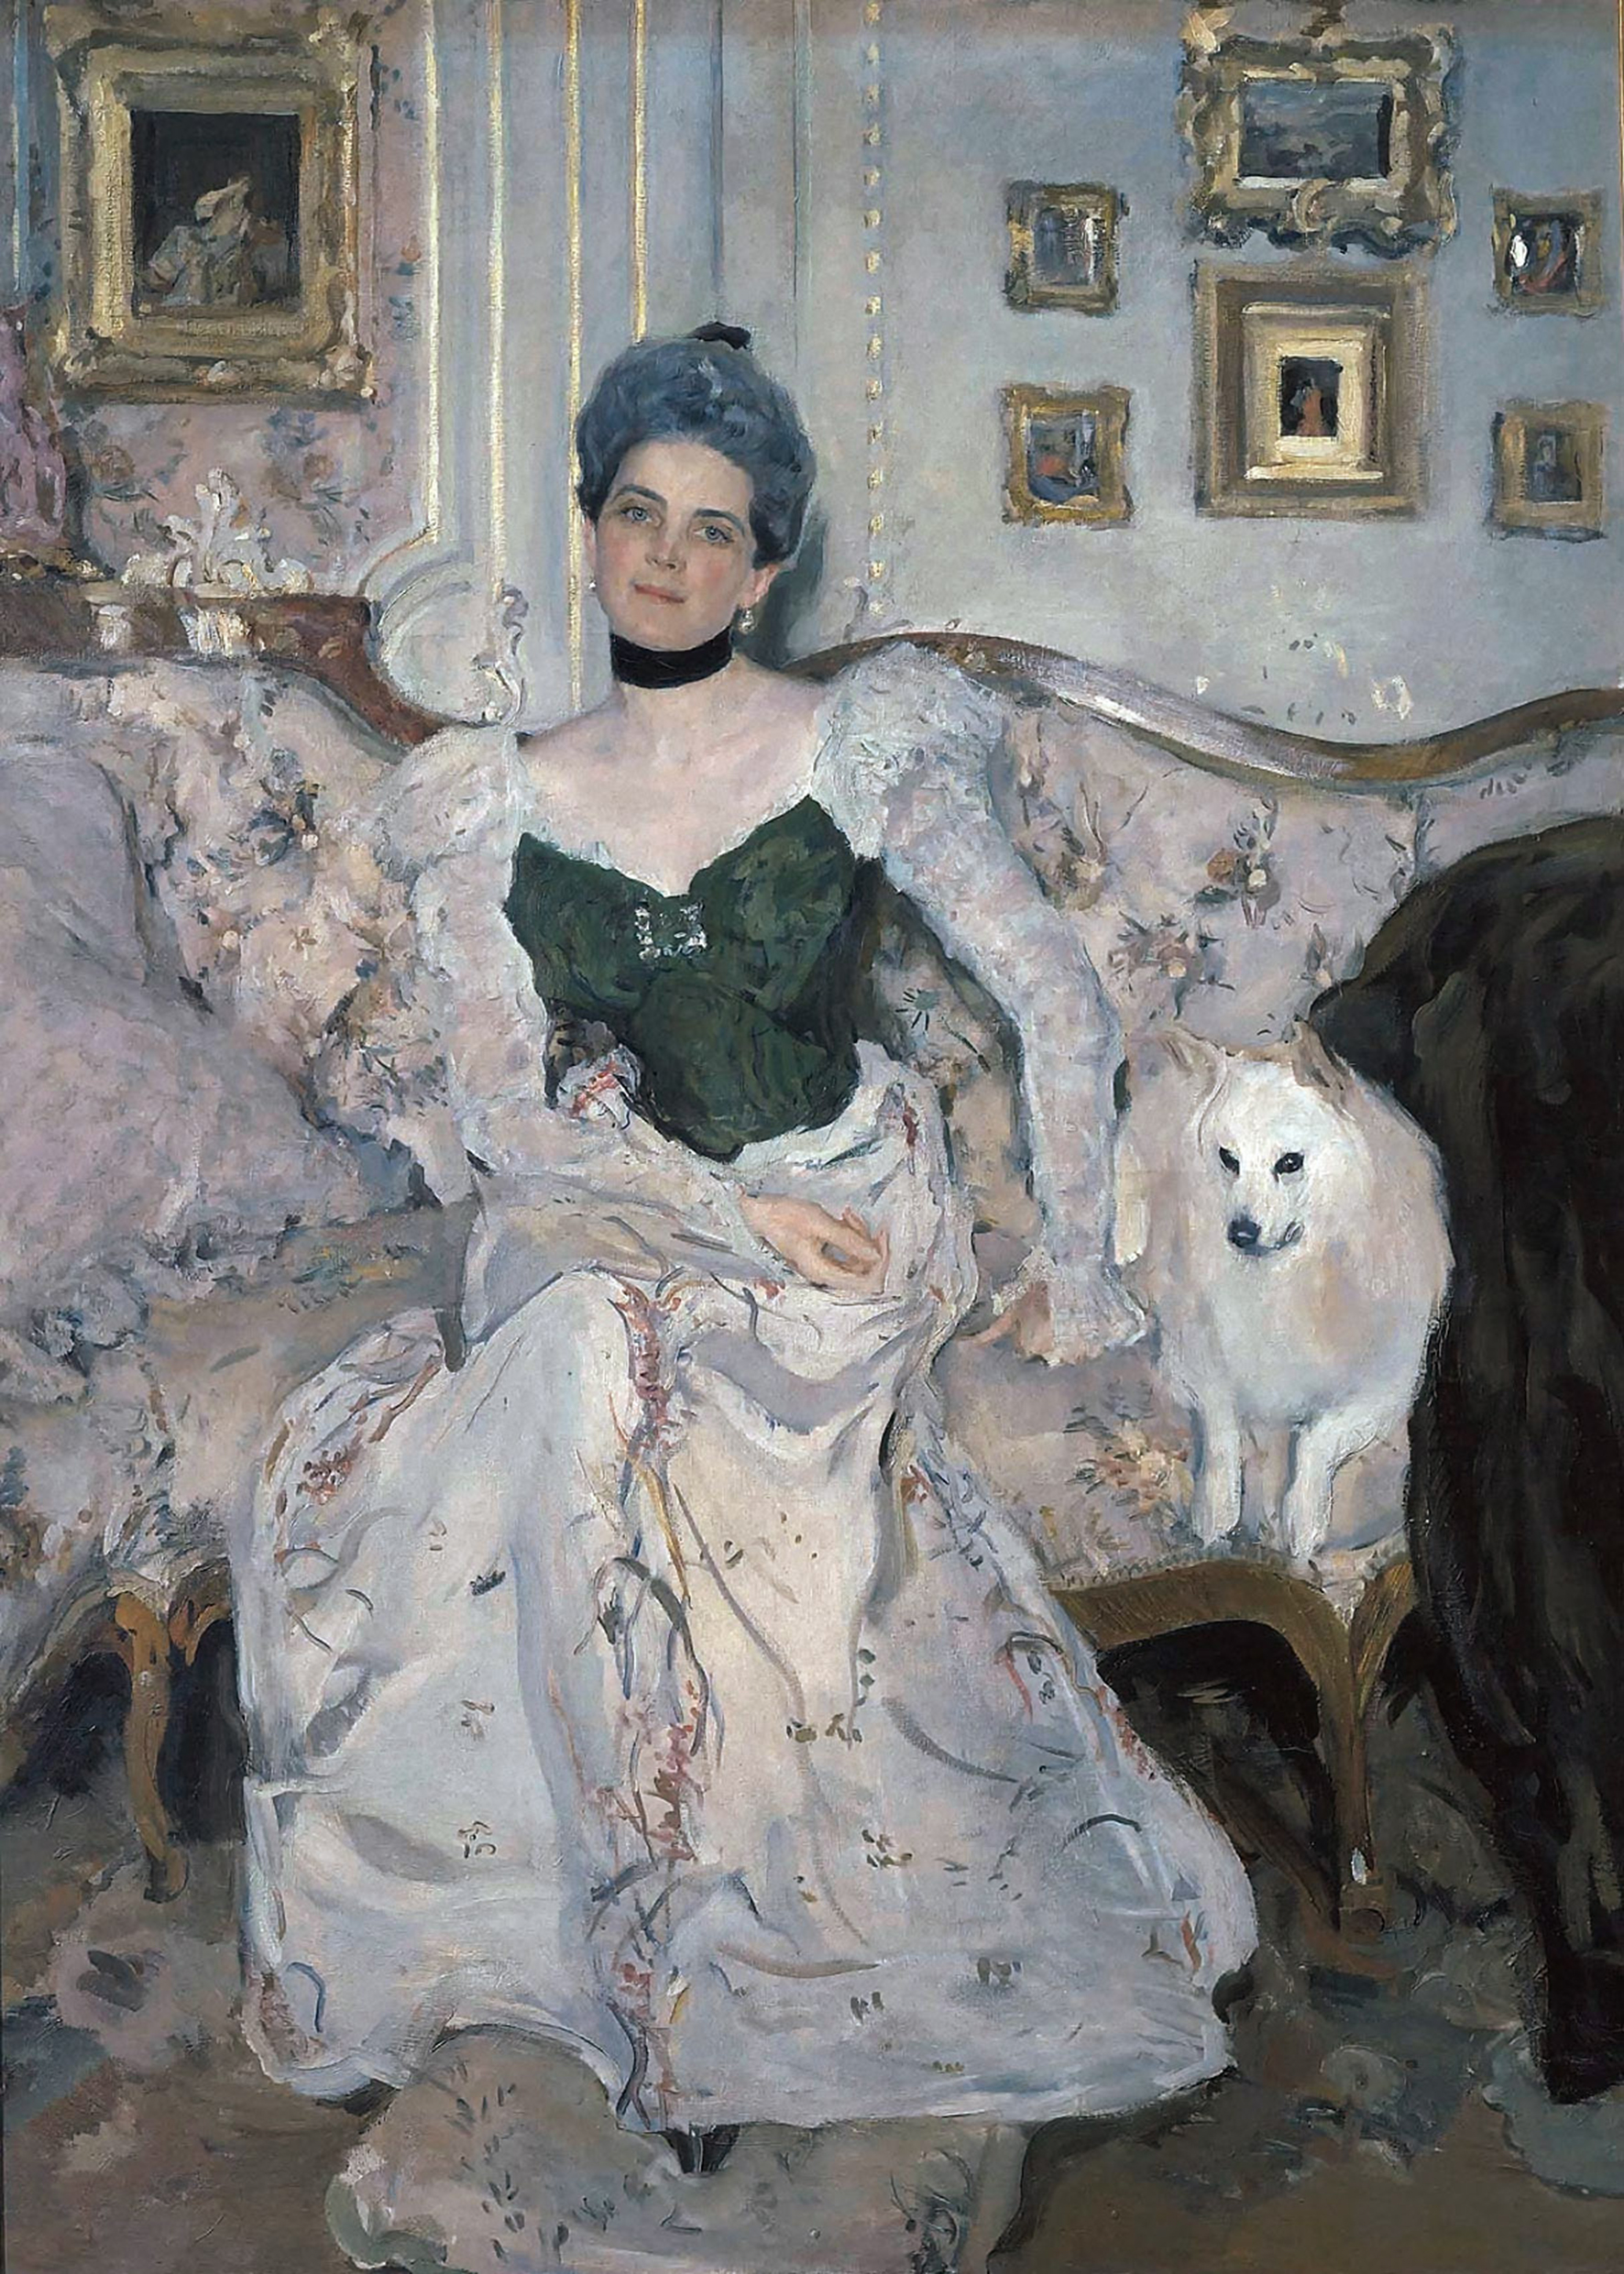 زینیدا نیکولائونا یوسوپوا by Valentin Serov - 1902 